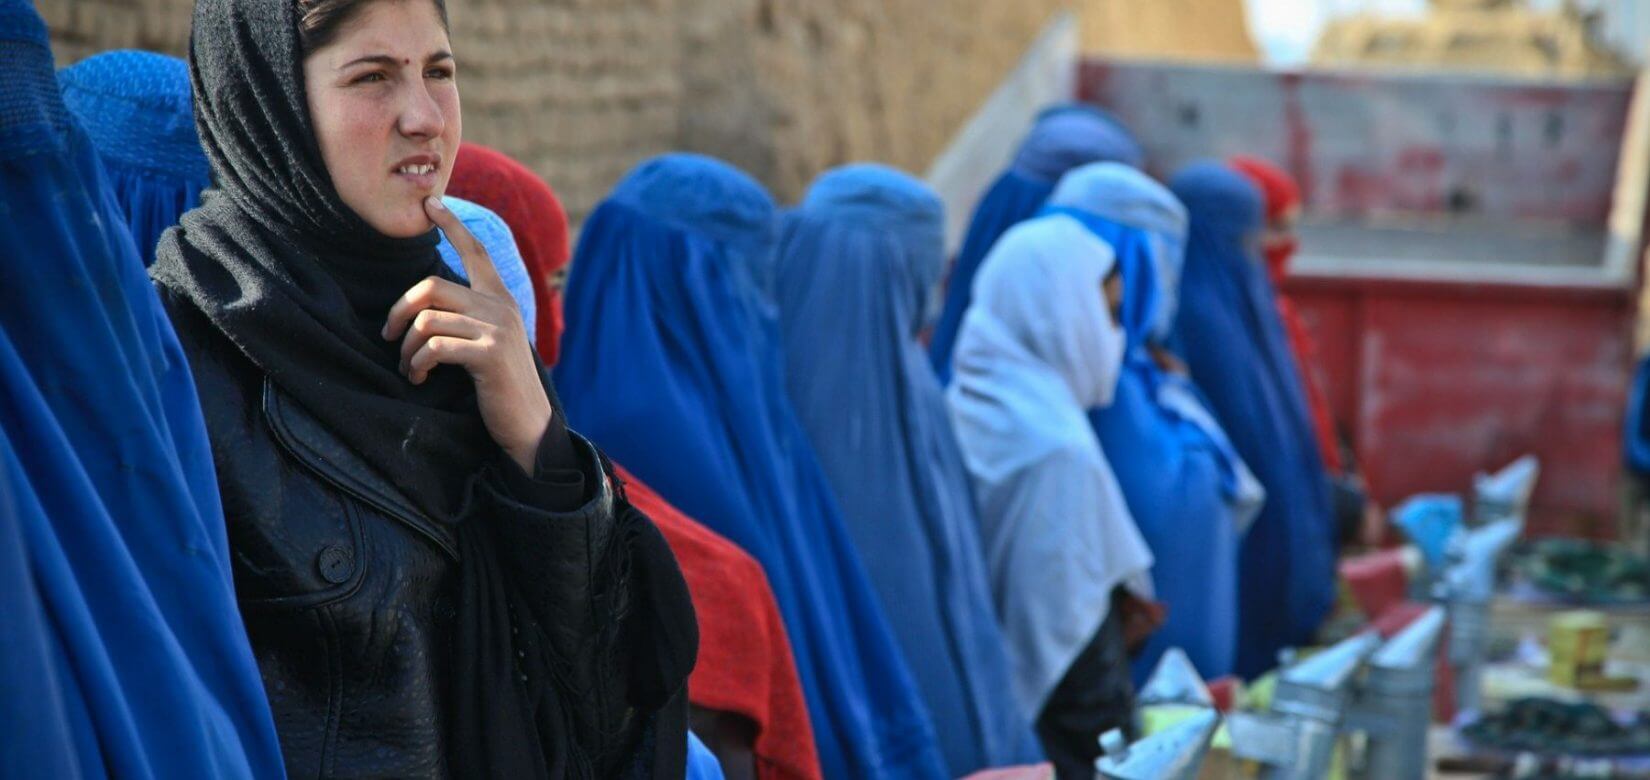 Ταλιμπάν: Οι γυναίκες θα φοιτούν στα πανεπιστήμια αλλά όχι σε μικτές τάξεις